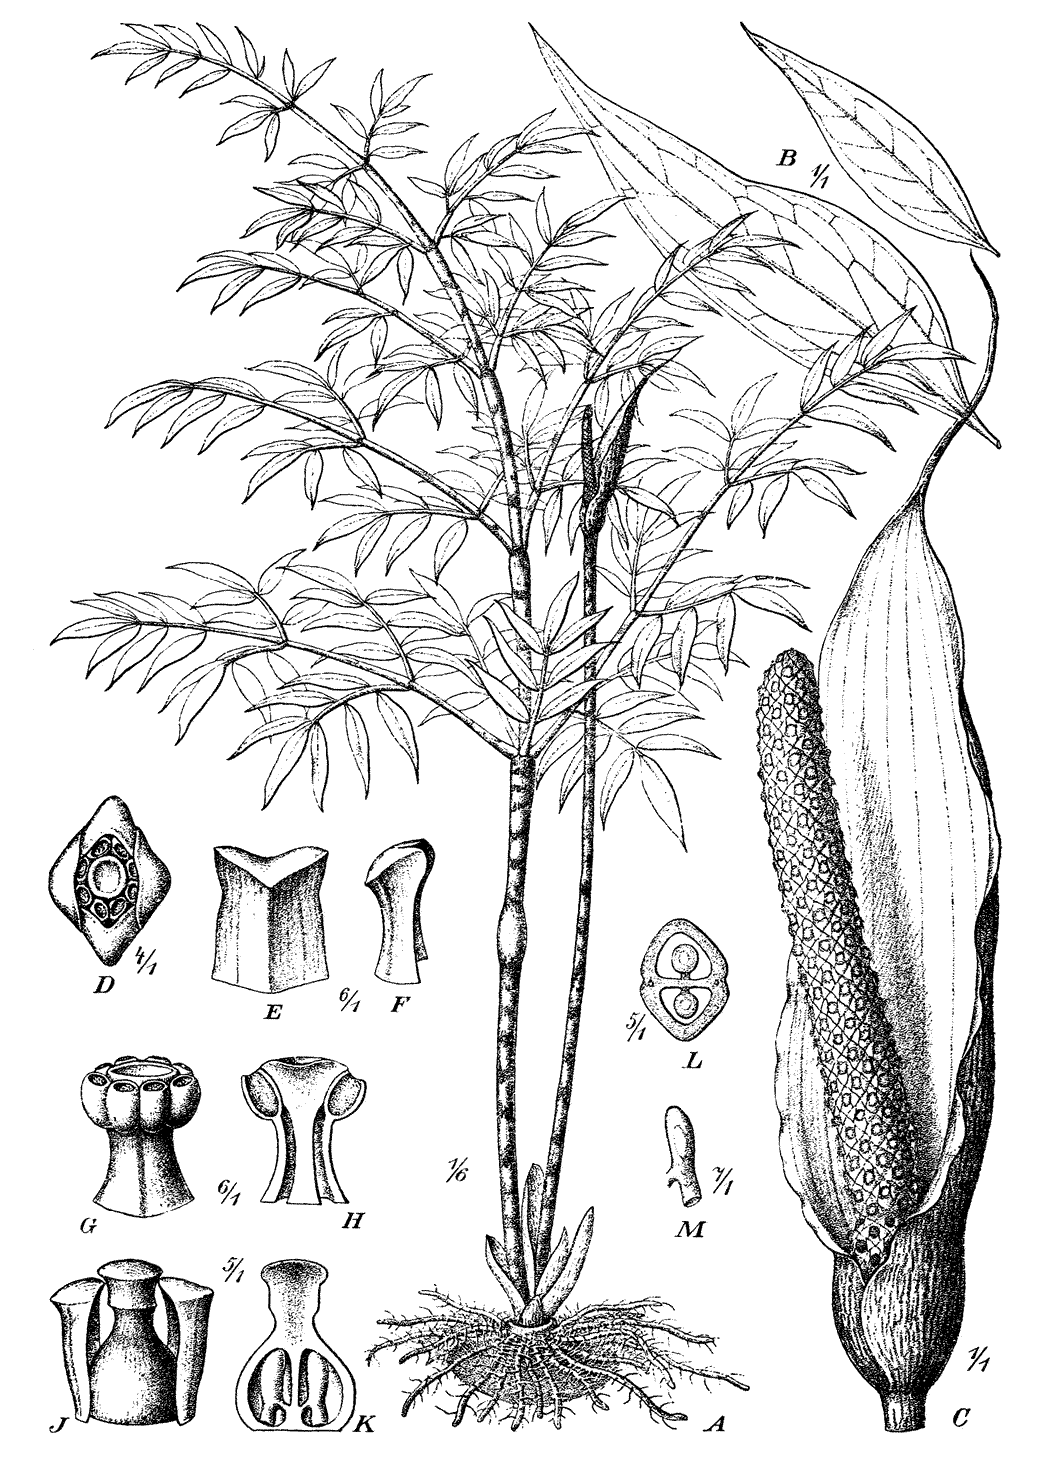 Fig. 161: Gonatopus Boivinii